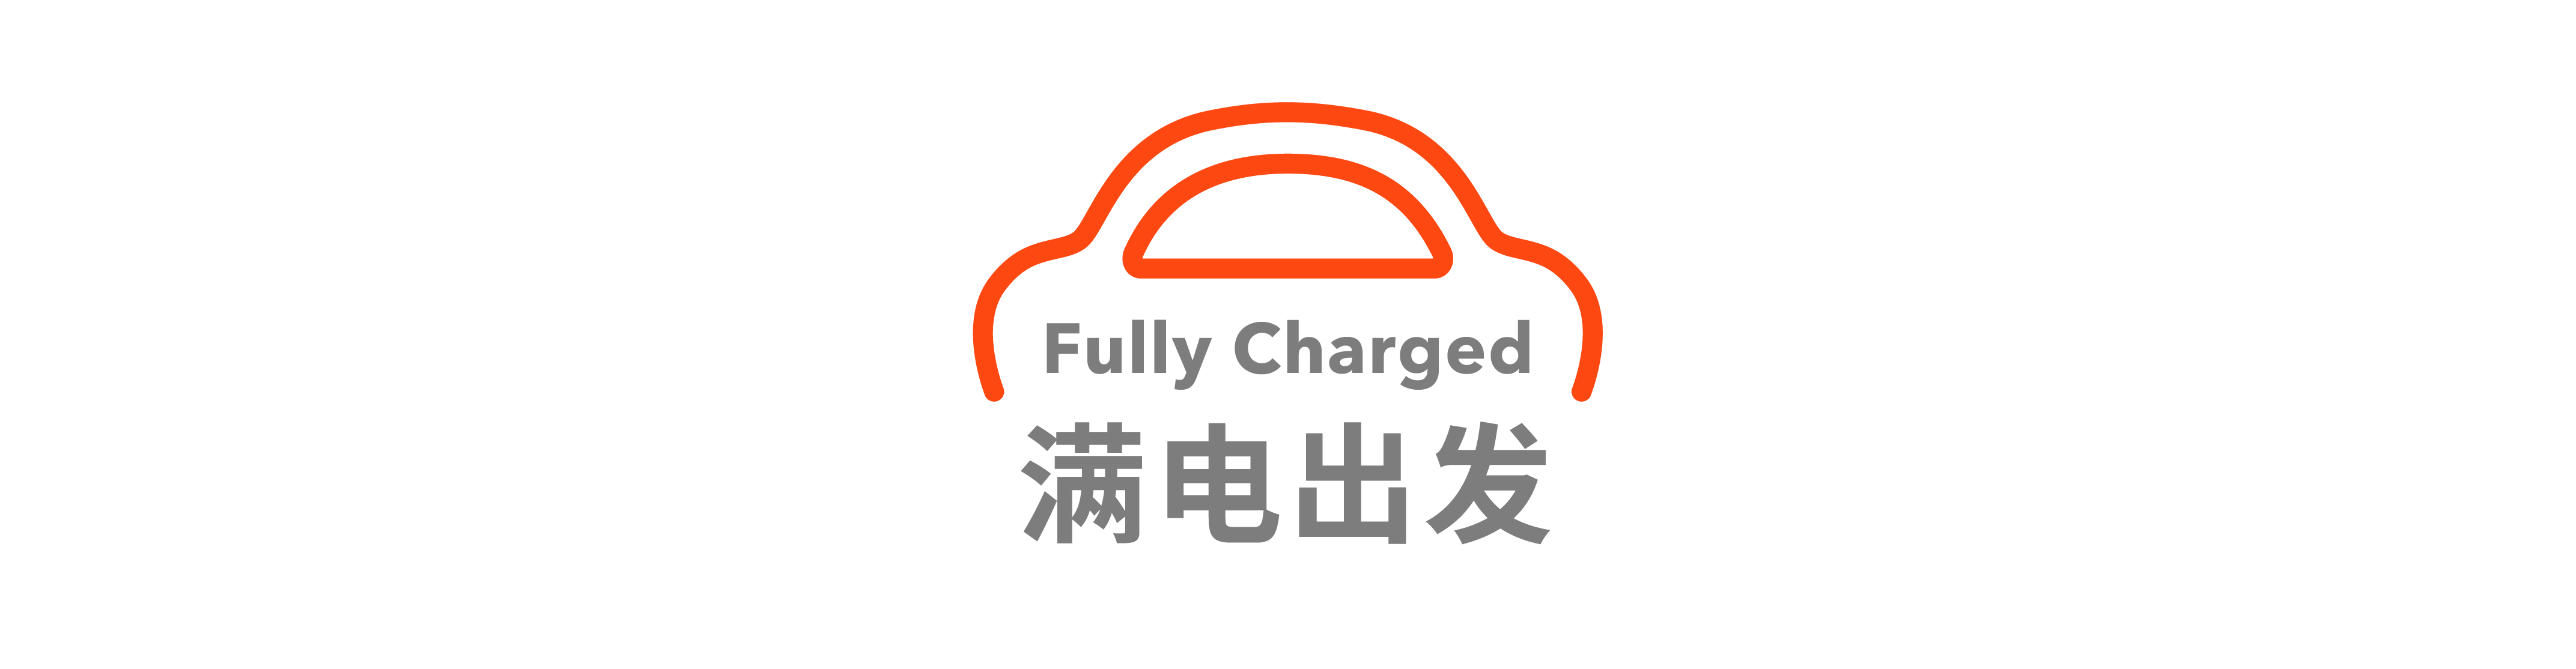 11 - Esposizione al test sulla neve per auto Xiaomi / FF ha firmato un accordo strategico con il debutto di Huanggang City / Corvette E-Ray